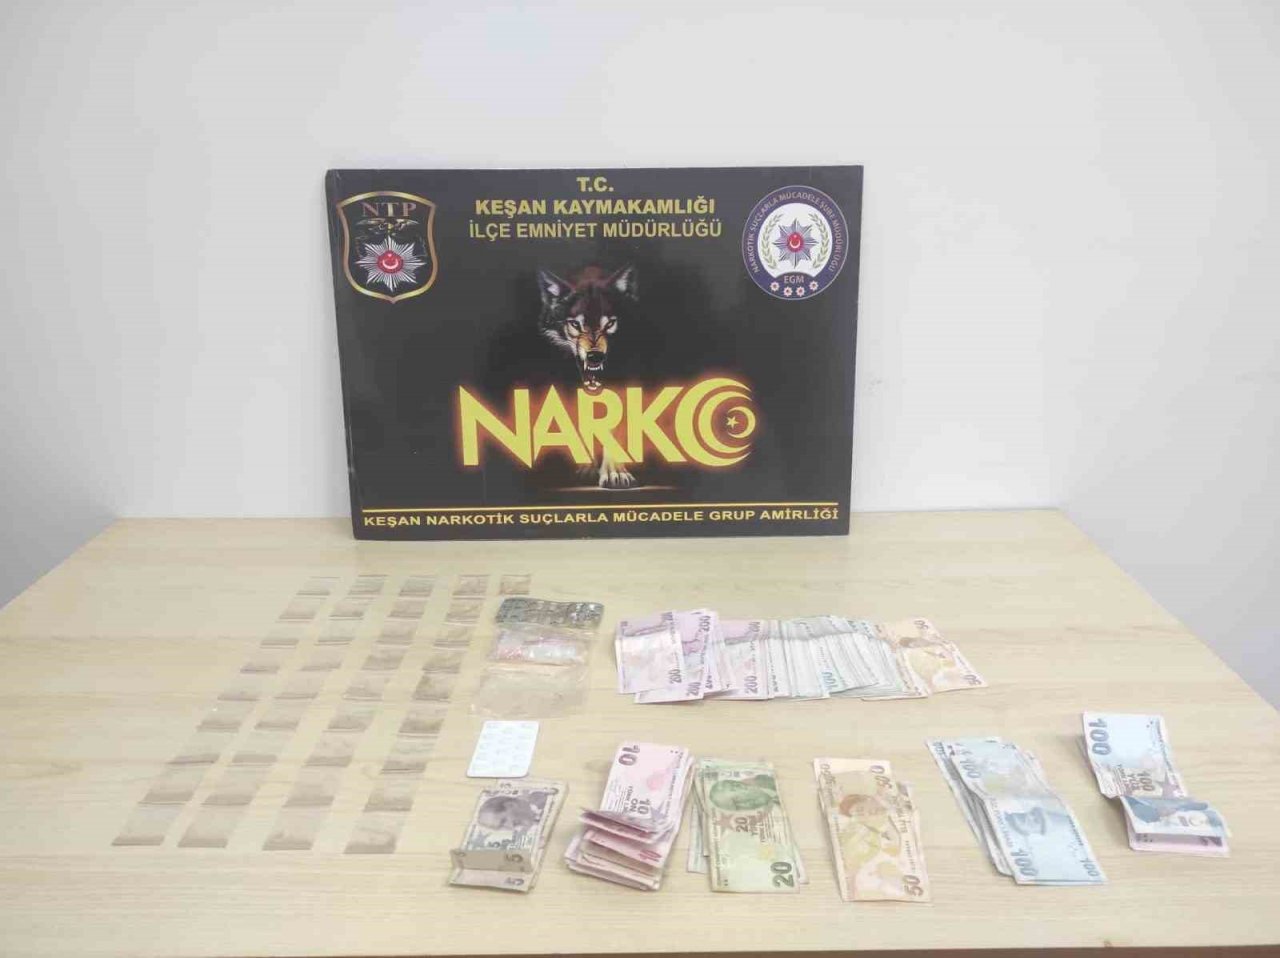 Edirne’de uyuşturucu operasyonu: 26 gözaltı